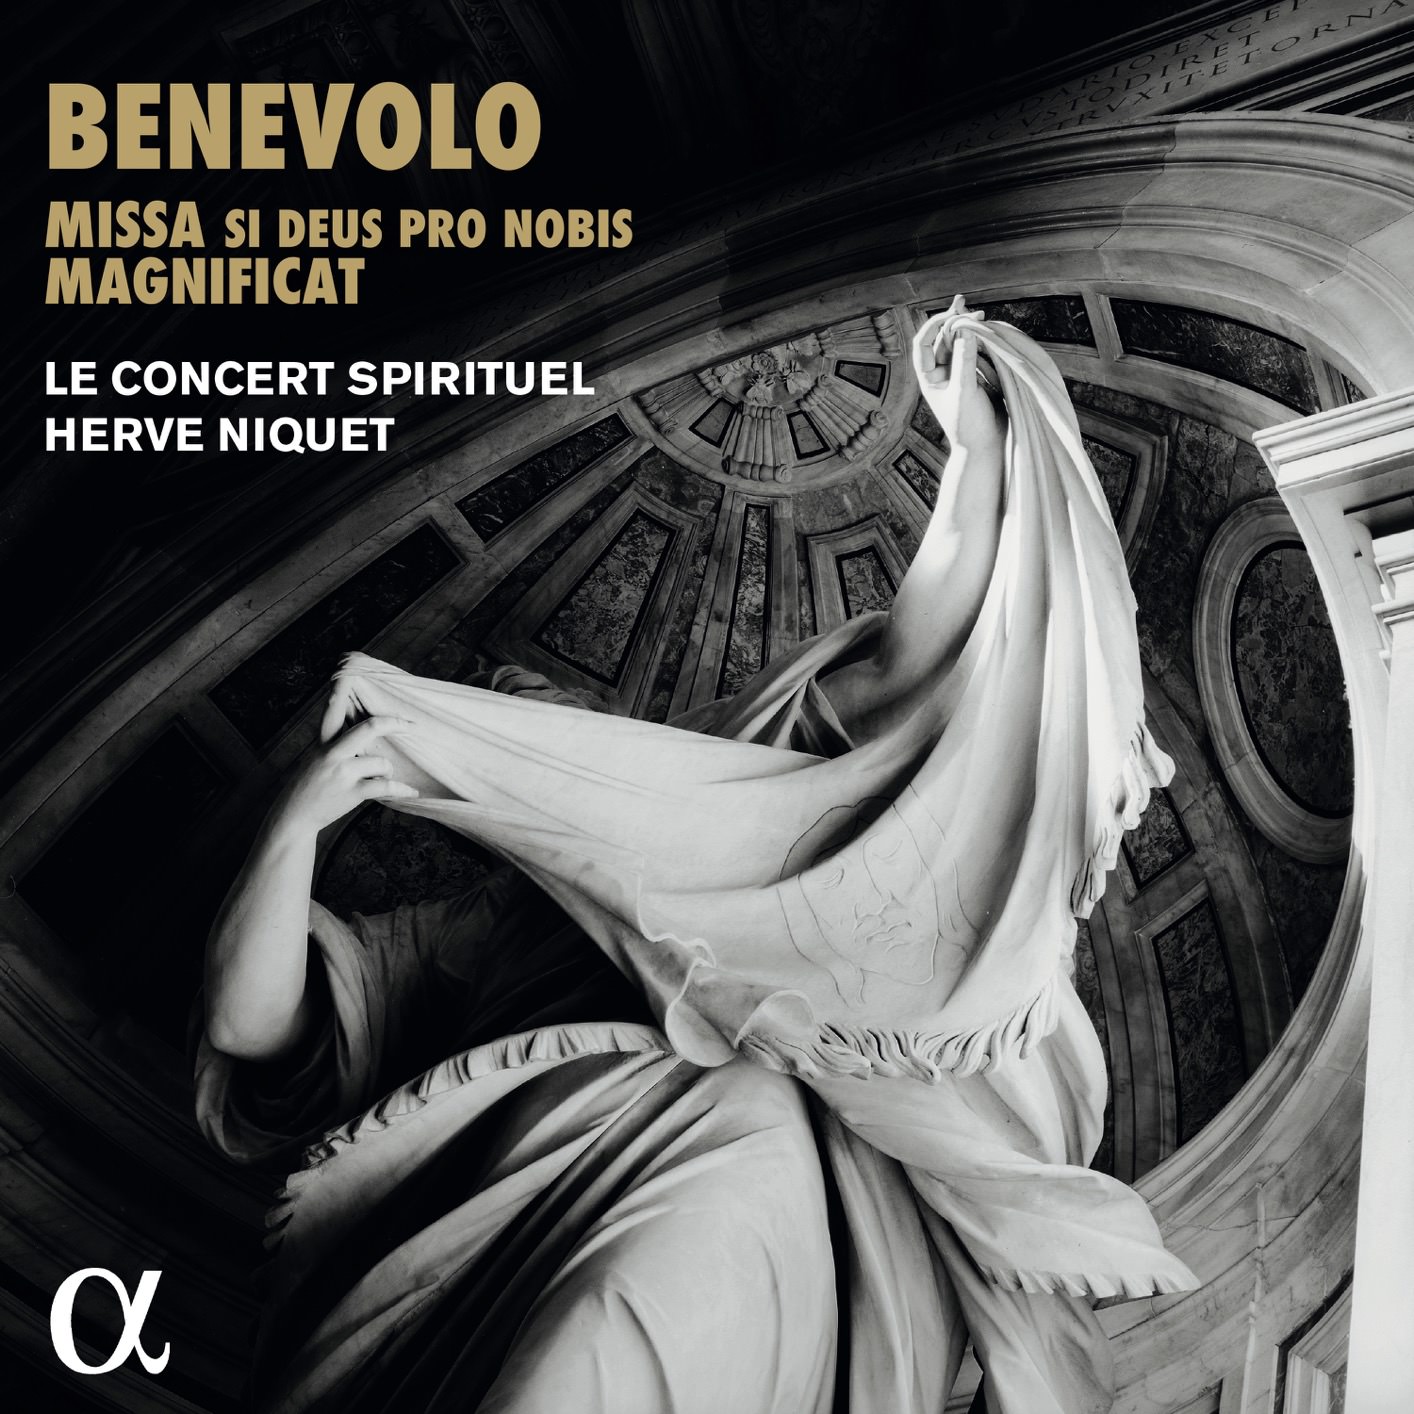 Le Concert Spirituel, Herve Niquet - Benevolo: Missa si Deus pro nobis & Magnificat (2018) [FLAC 24bit/88,2kHz]